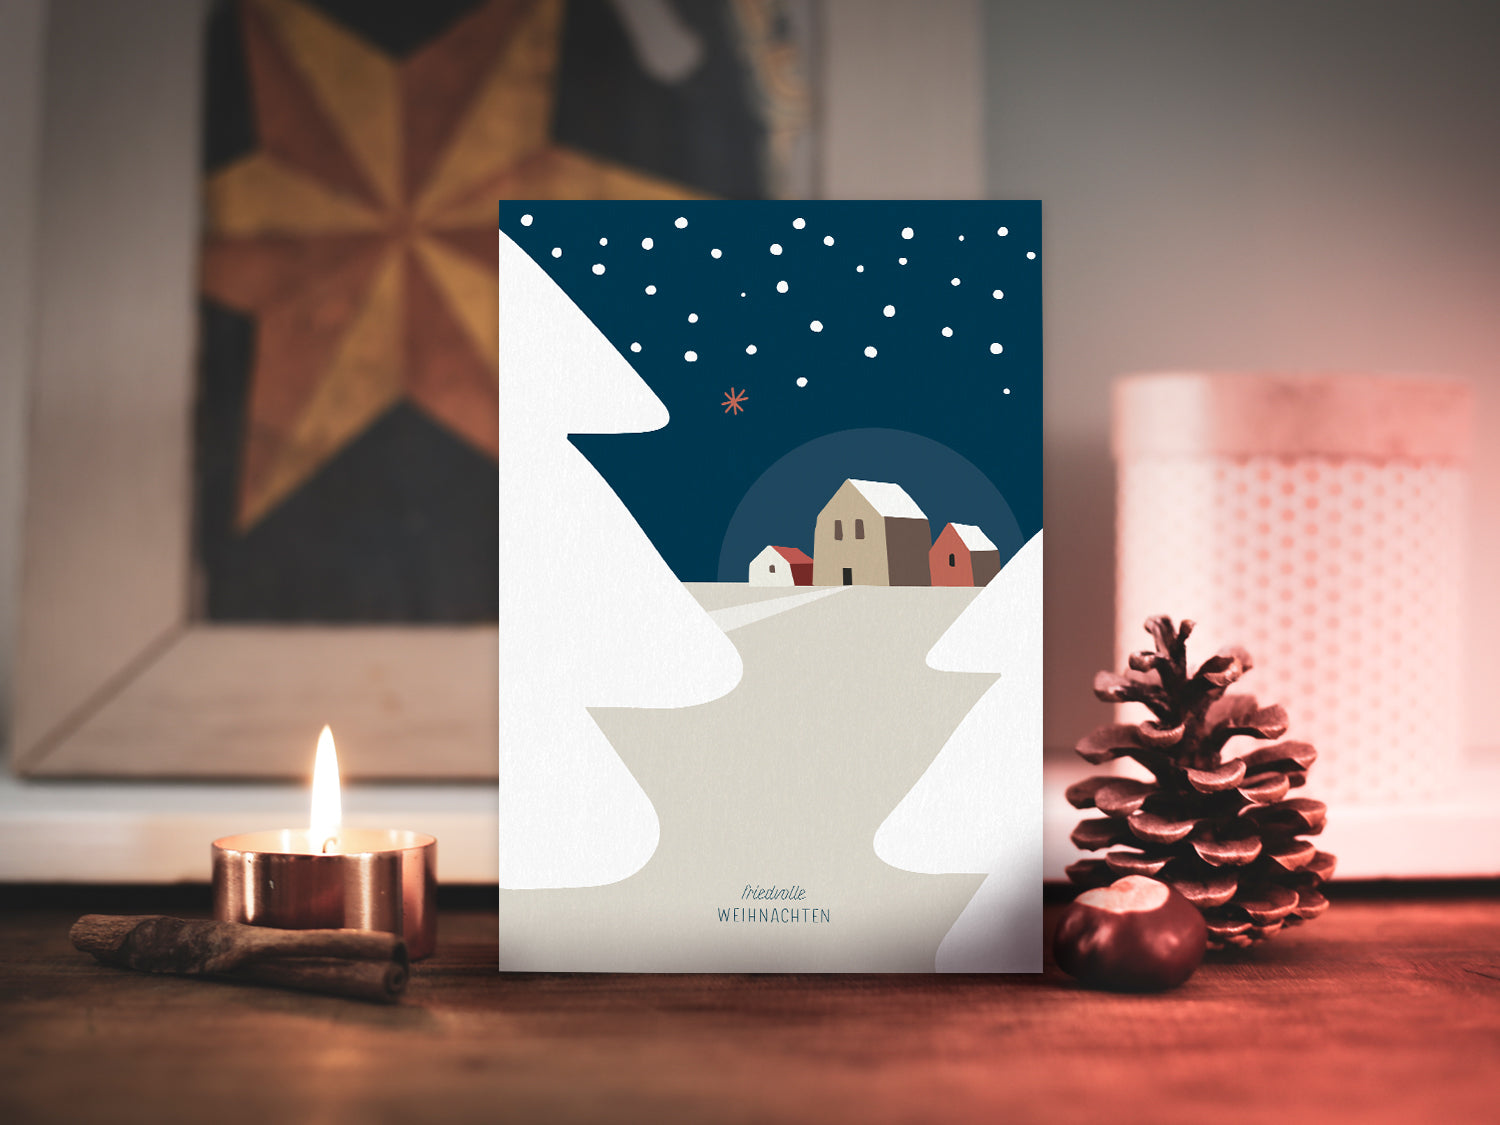 Weihnachtskarte im Scandi Nordic Stil als kleiner Postkartengruß, illustriert mit einer ruhigen, verschneiten Winterlandschaft und dem Wunsch nach "friedvollen Weihnachten".  Postkarte: DIN A6 Druck: 4/1-farbig, Offsetdruck   Karton: Offsetkarton, 400g/qm (natürliche Haptik)   Briefumschlag: weiß, nassklebend